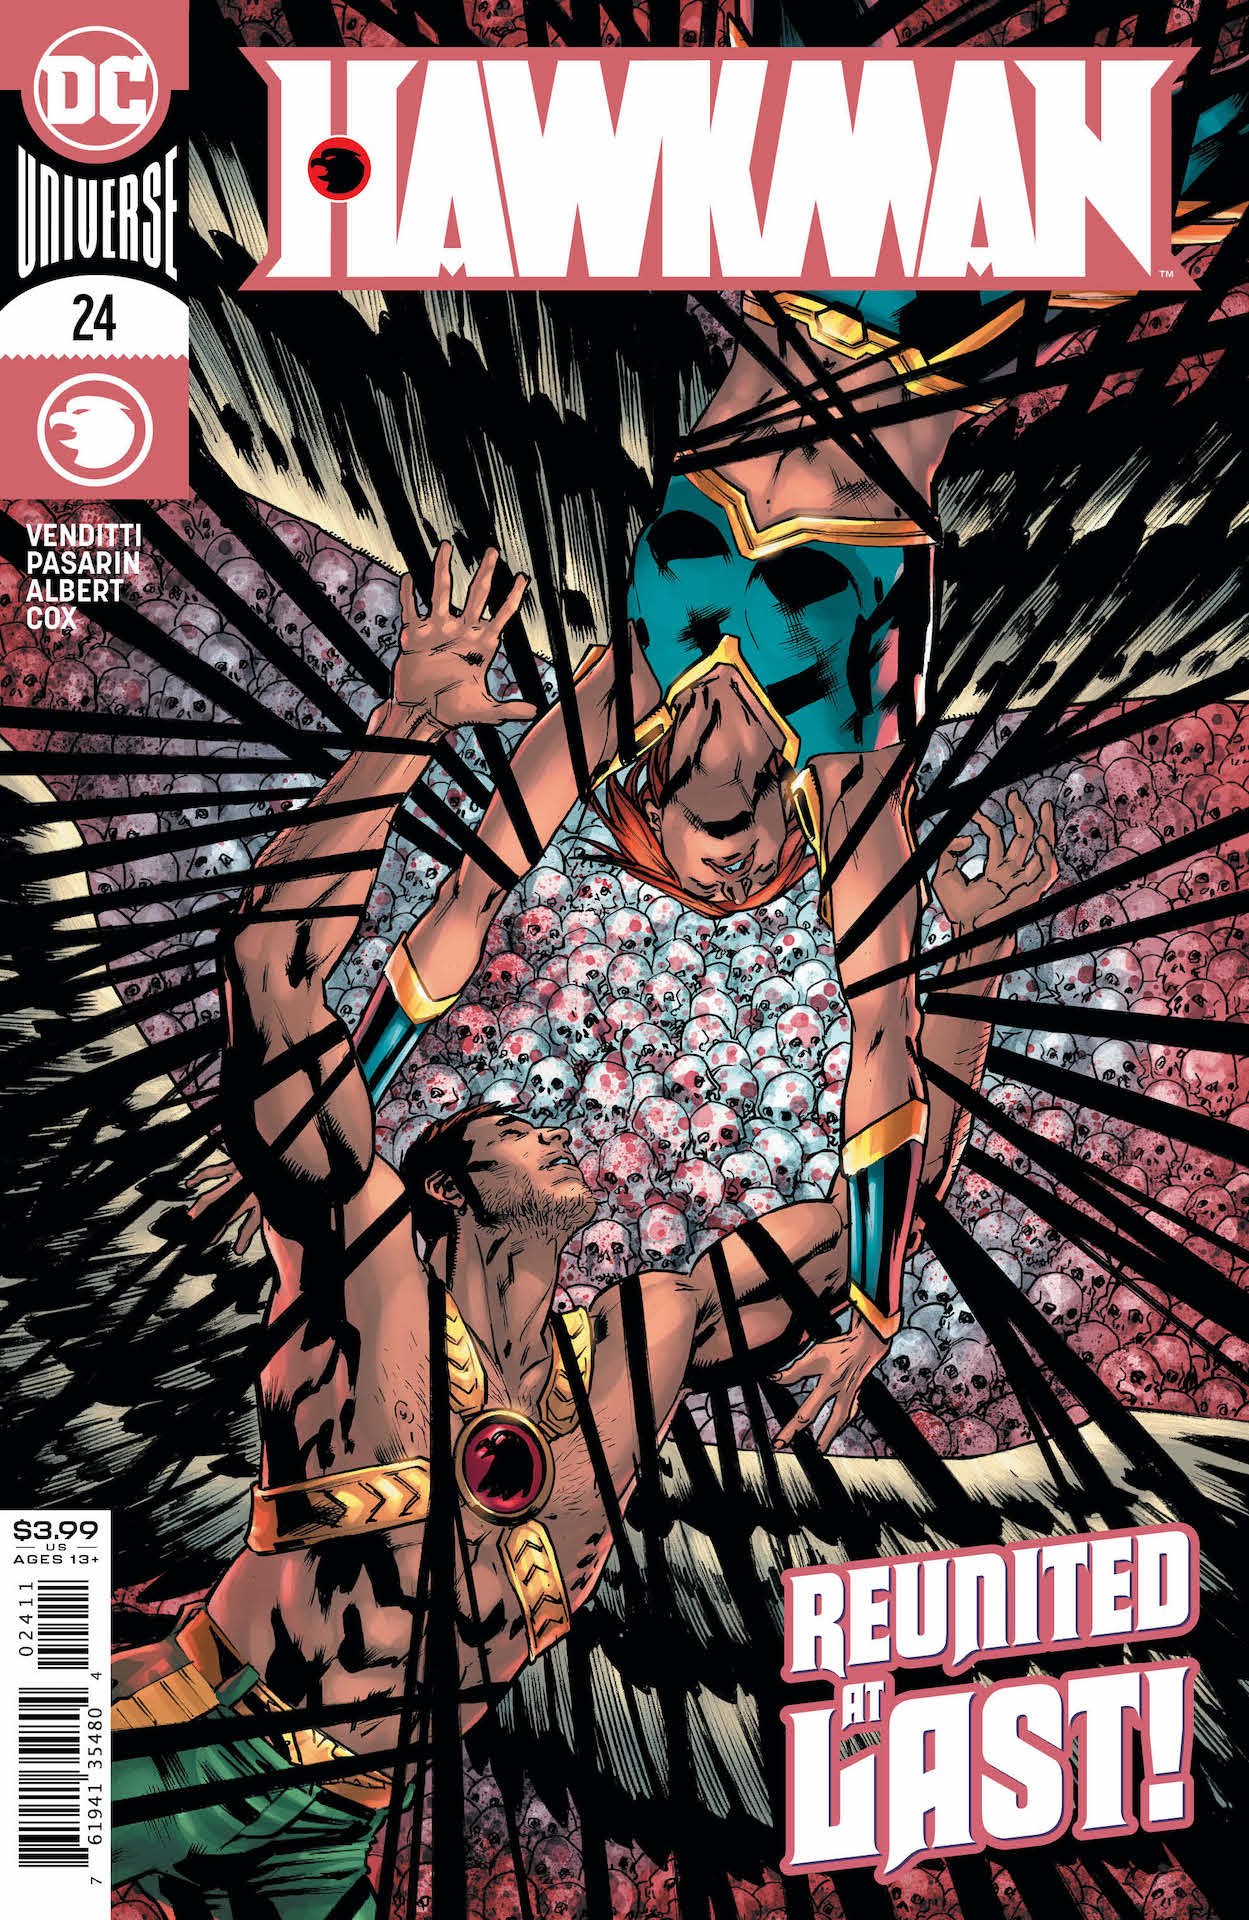 DC Preview: Hawkman #24